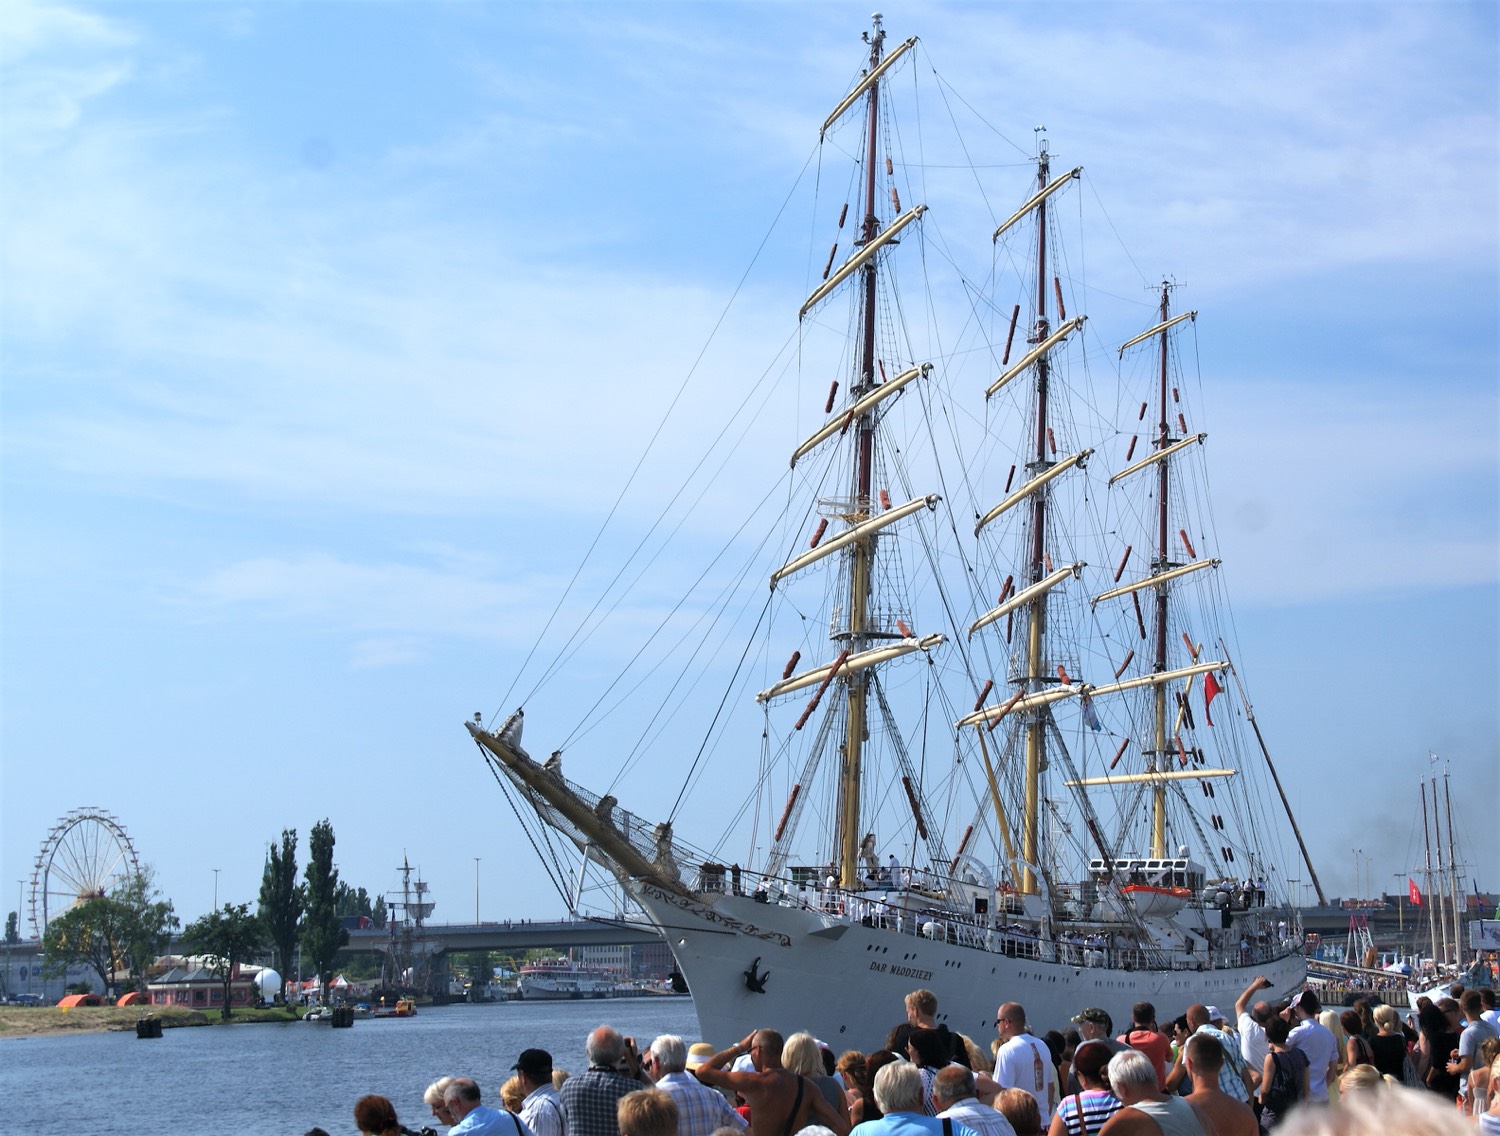 DAR MŁODZIEŻY - polska fregata szkoleniowa na regatach wielkich żaglowców regat wielkich żaglowców The Tall Ships Races